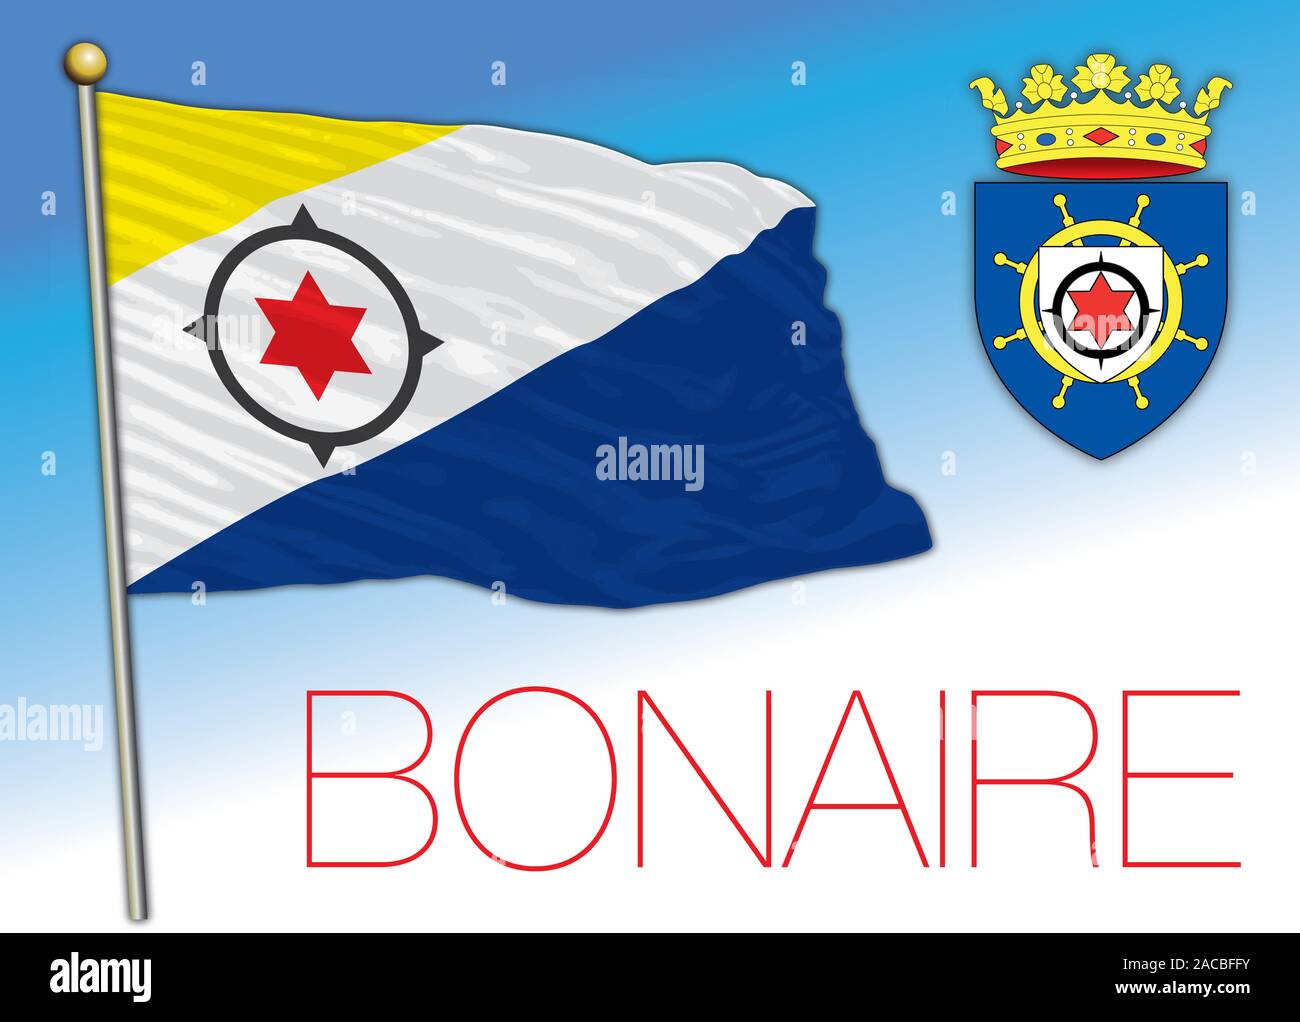 Bonaire Island bandiera ufficiale e stemma, paese dei Caraibi, illustrazione vettoriale Illustrazione Vettoriale